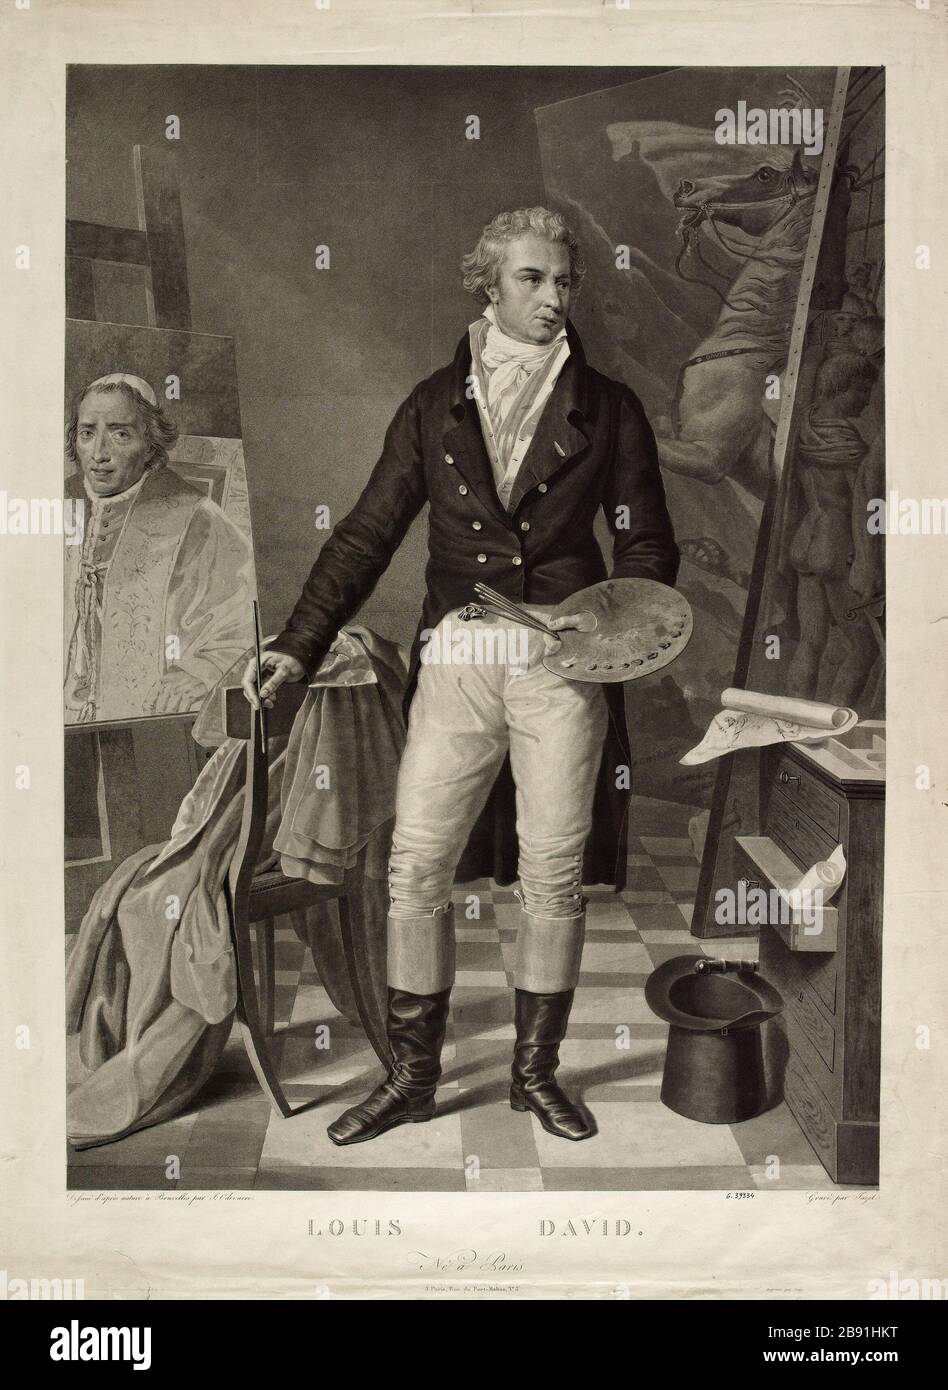 Louis David Jazet, d’après Joseph-Denis Odevaere (1778-1830). Jacques-Louis David (1748-1825). Aquatinte. Parigi, musée Carnavalet. Foto Stock